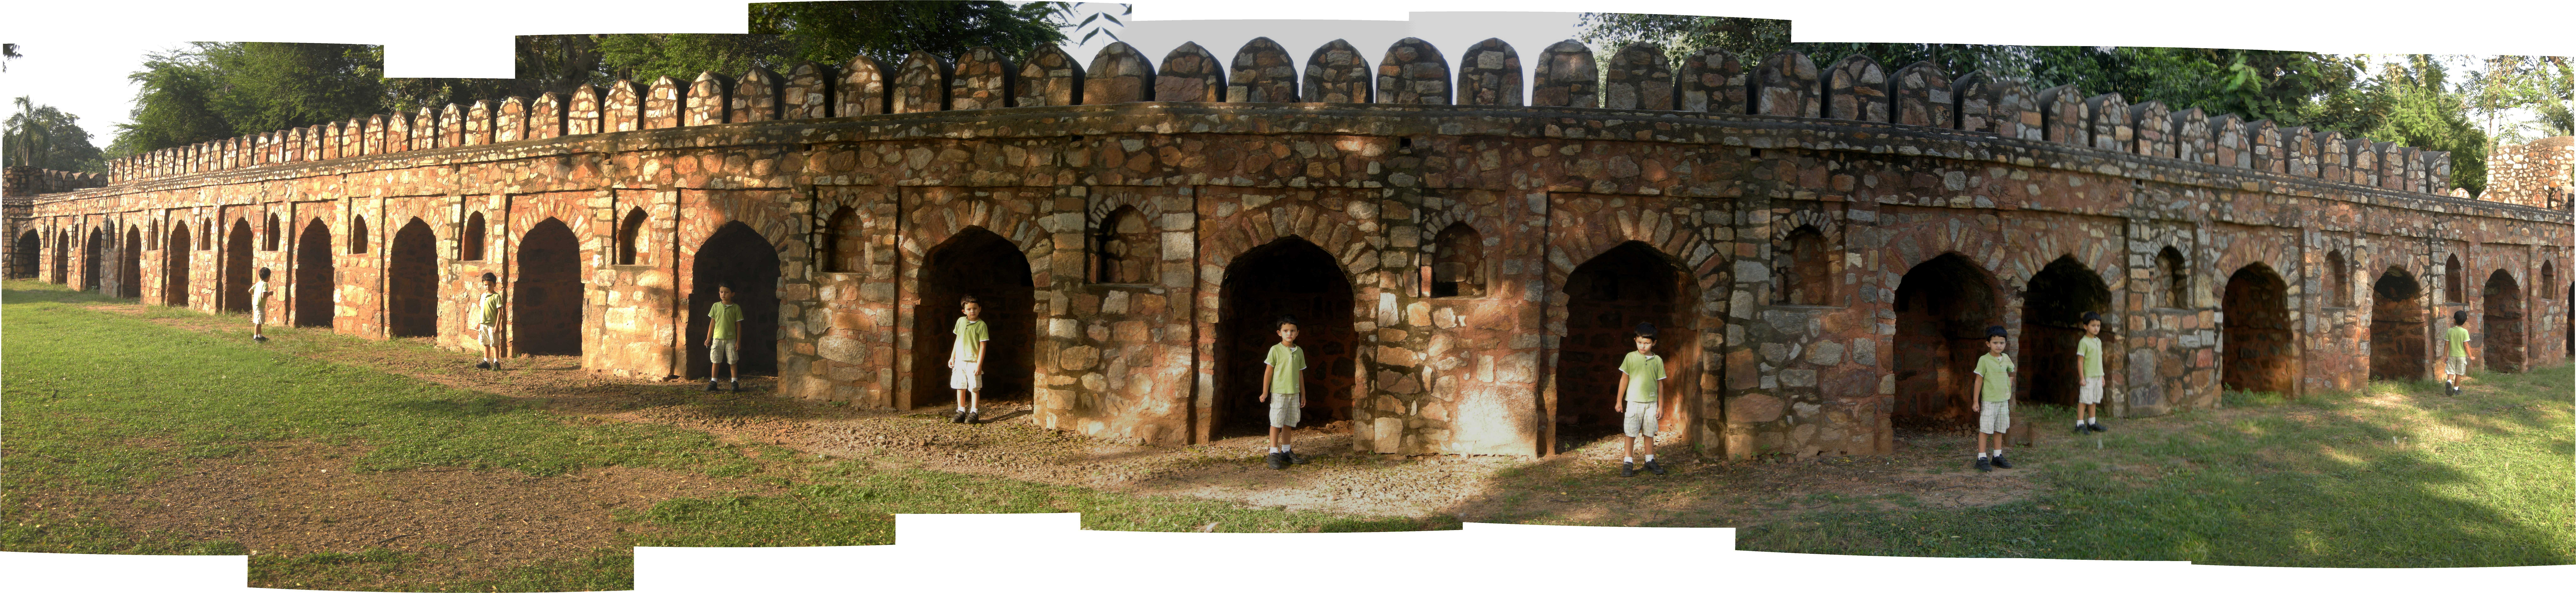 Rahil in Isa Khan enclosure at Humayans Tomb (3 Oct 2010)